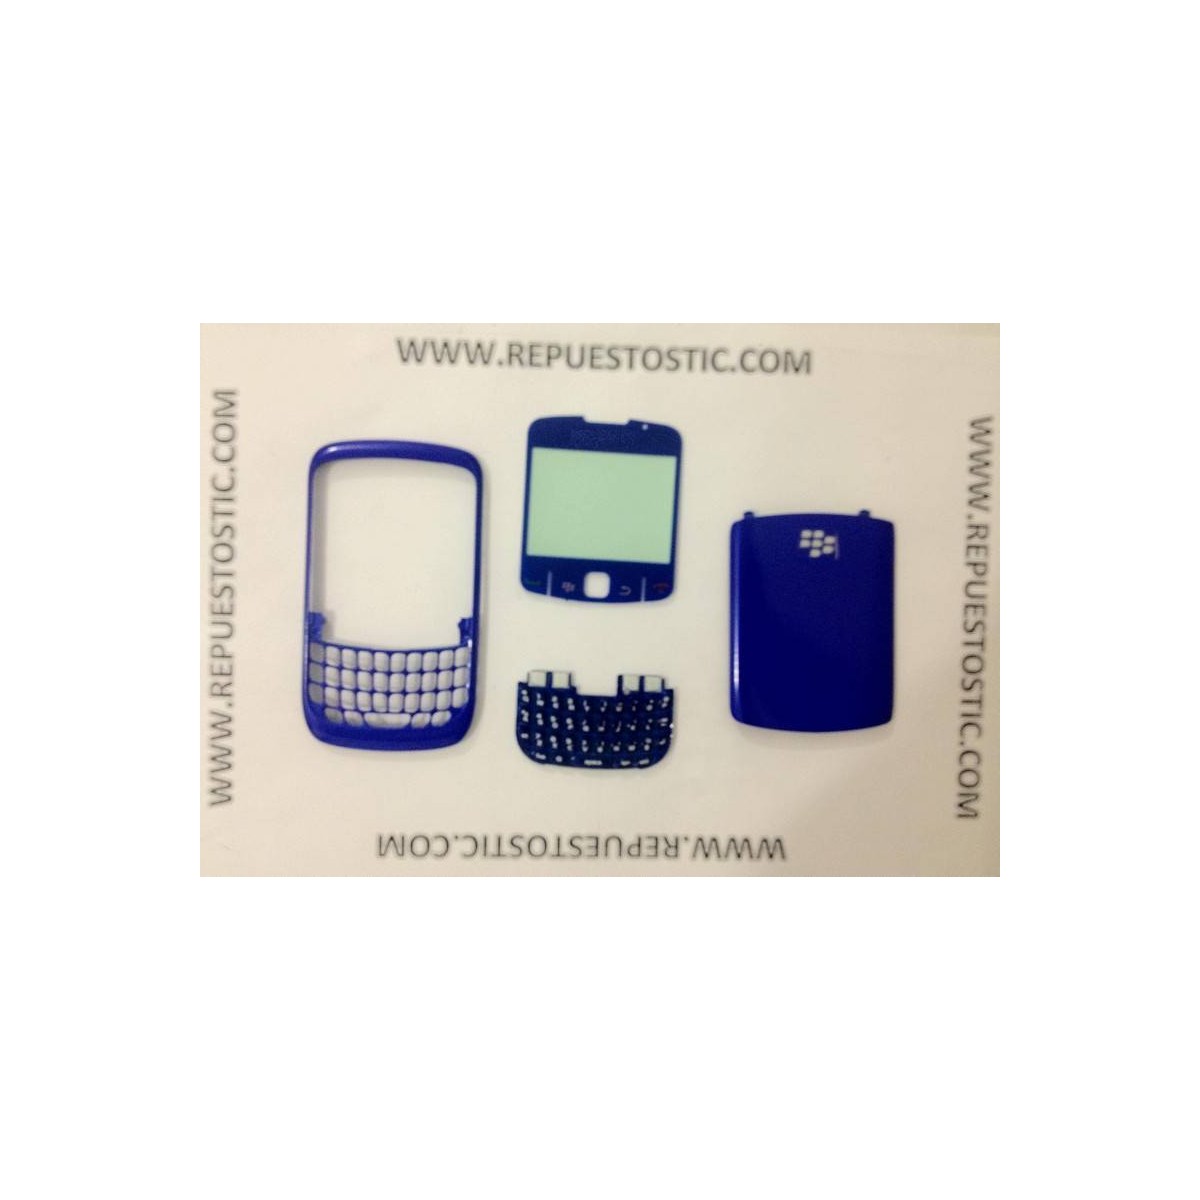 Carcaça BlackBerry 8520 Azul